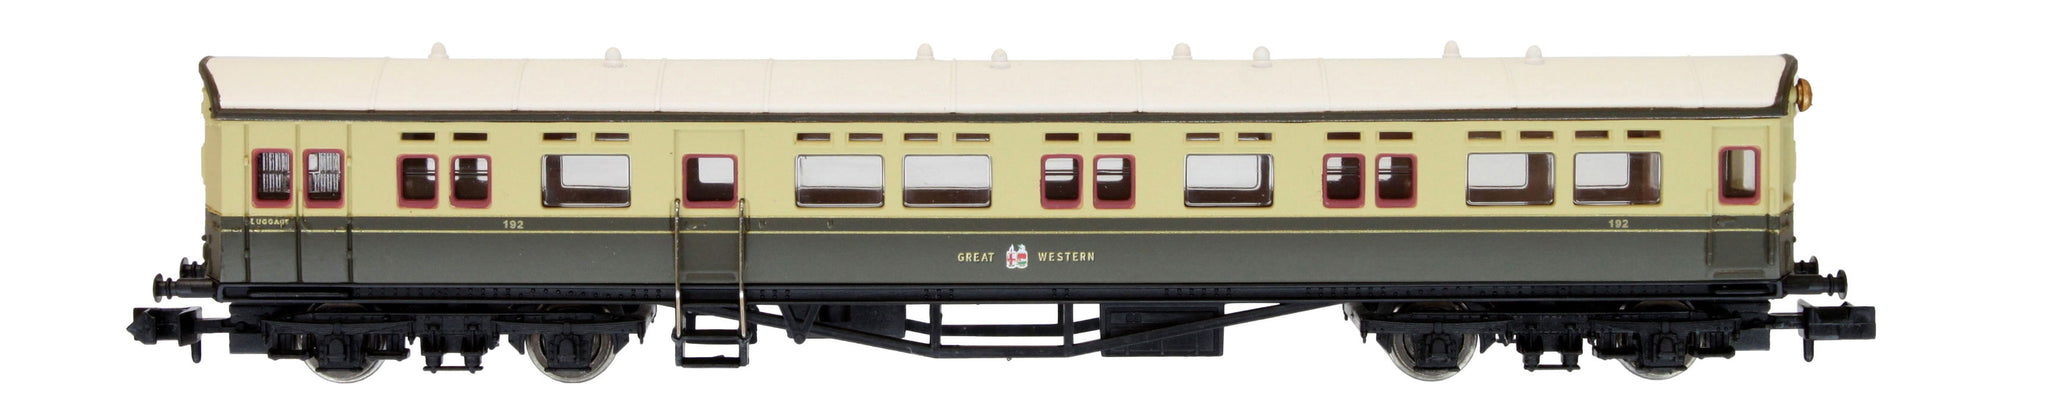 2P-004-017 N Gauge Autocoach GWR Great Crest Western Choc & Crm 192